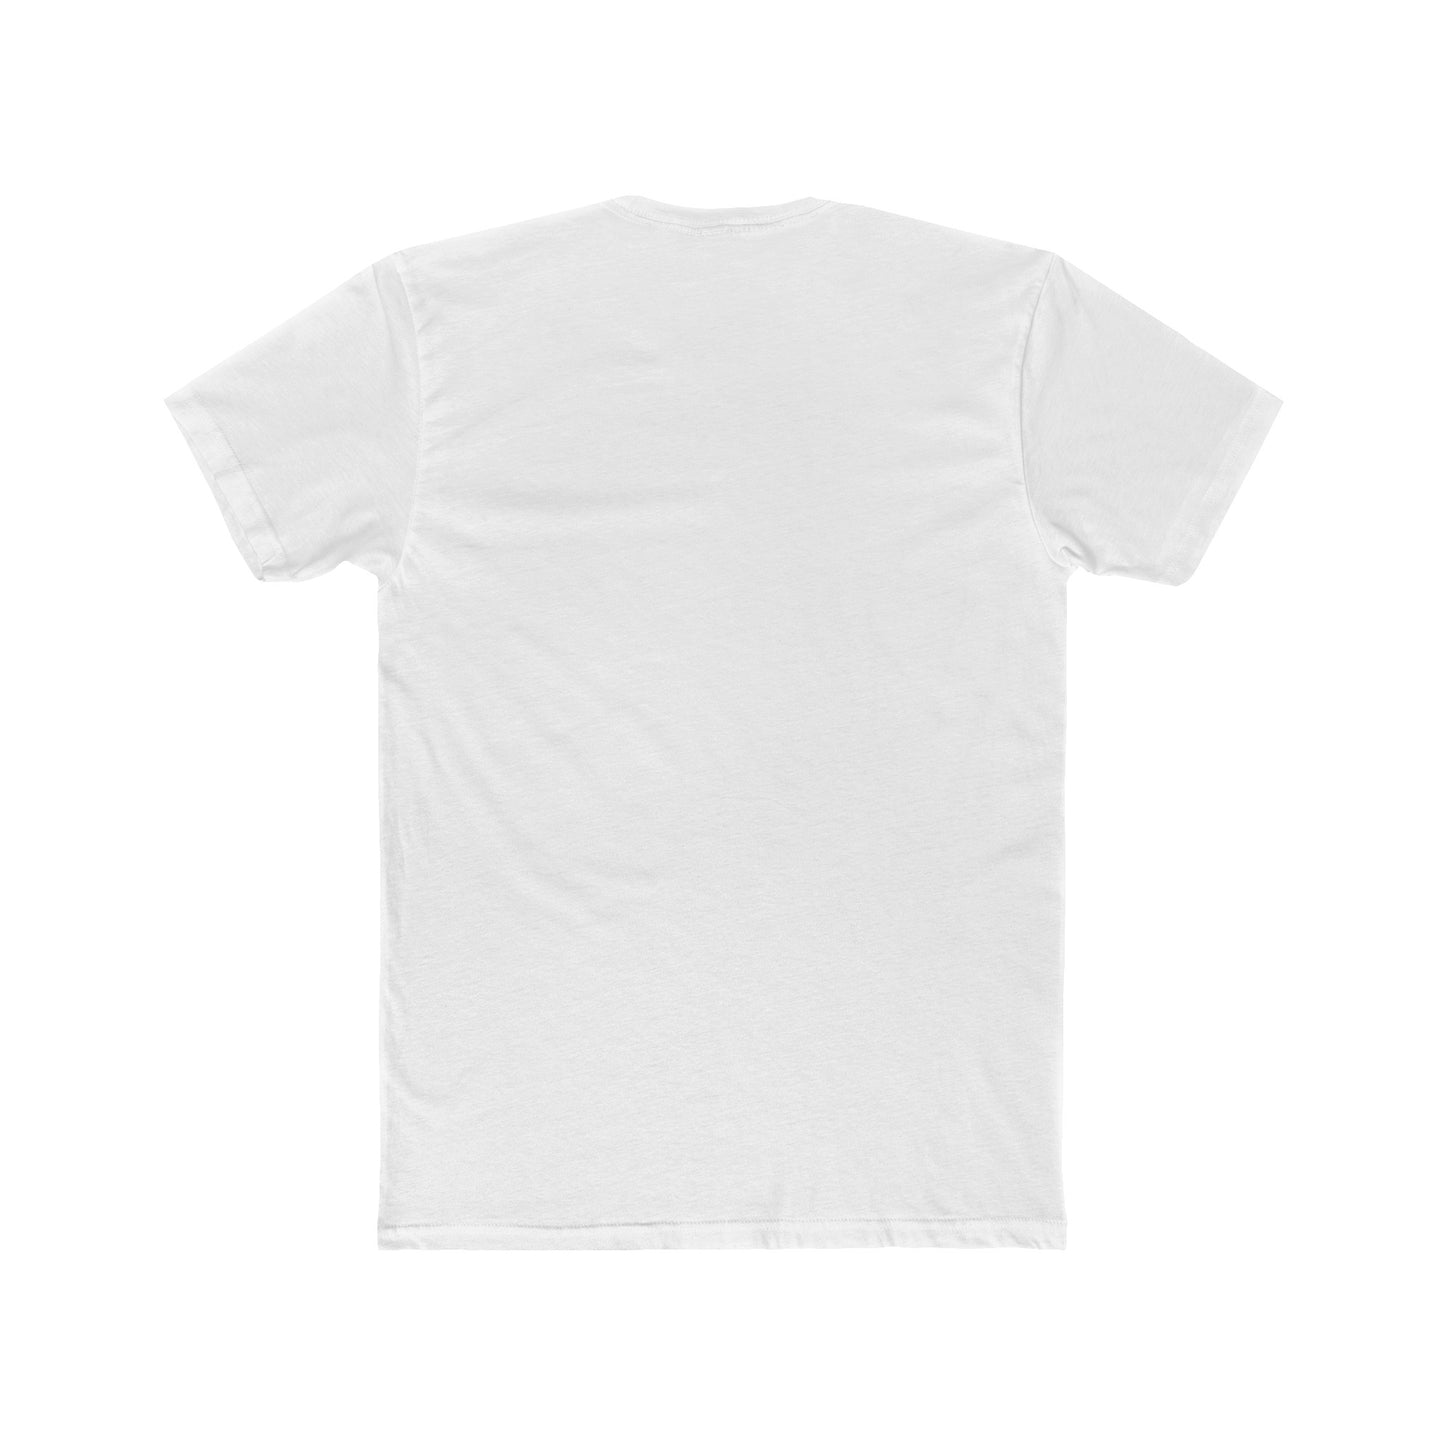 Premium Vegeta Hakaishin Men's T-Shirt